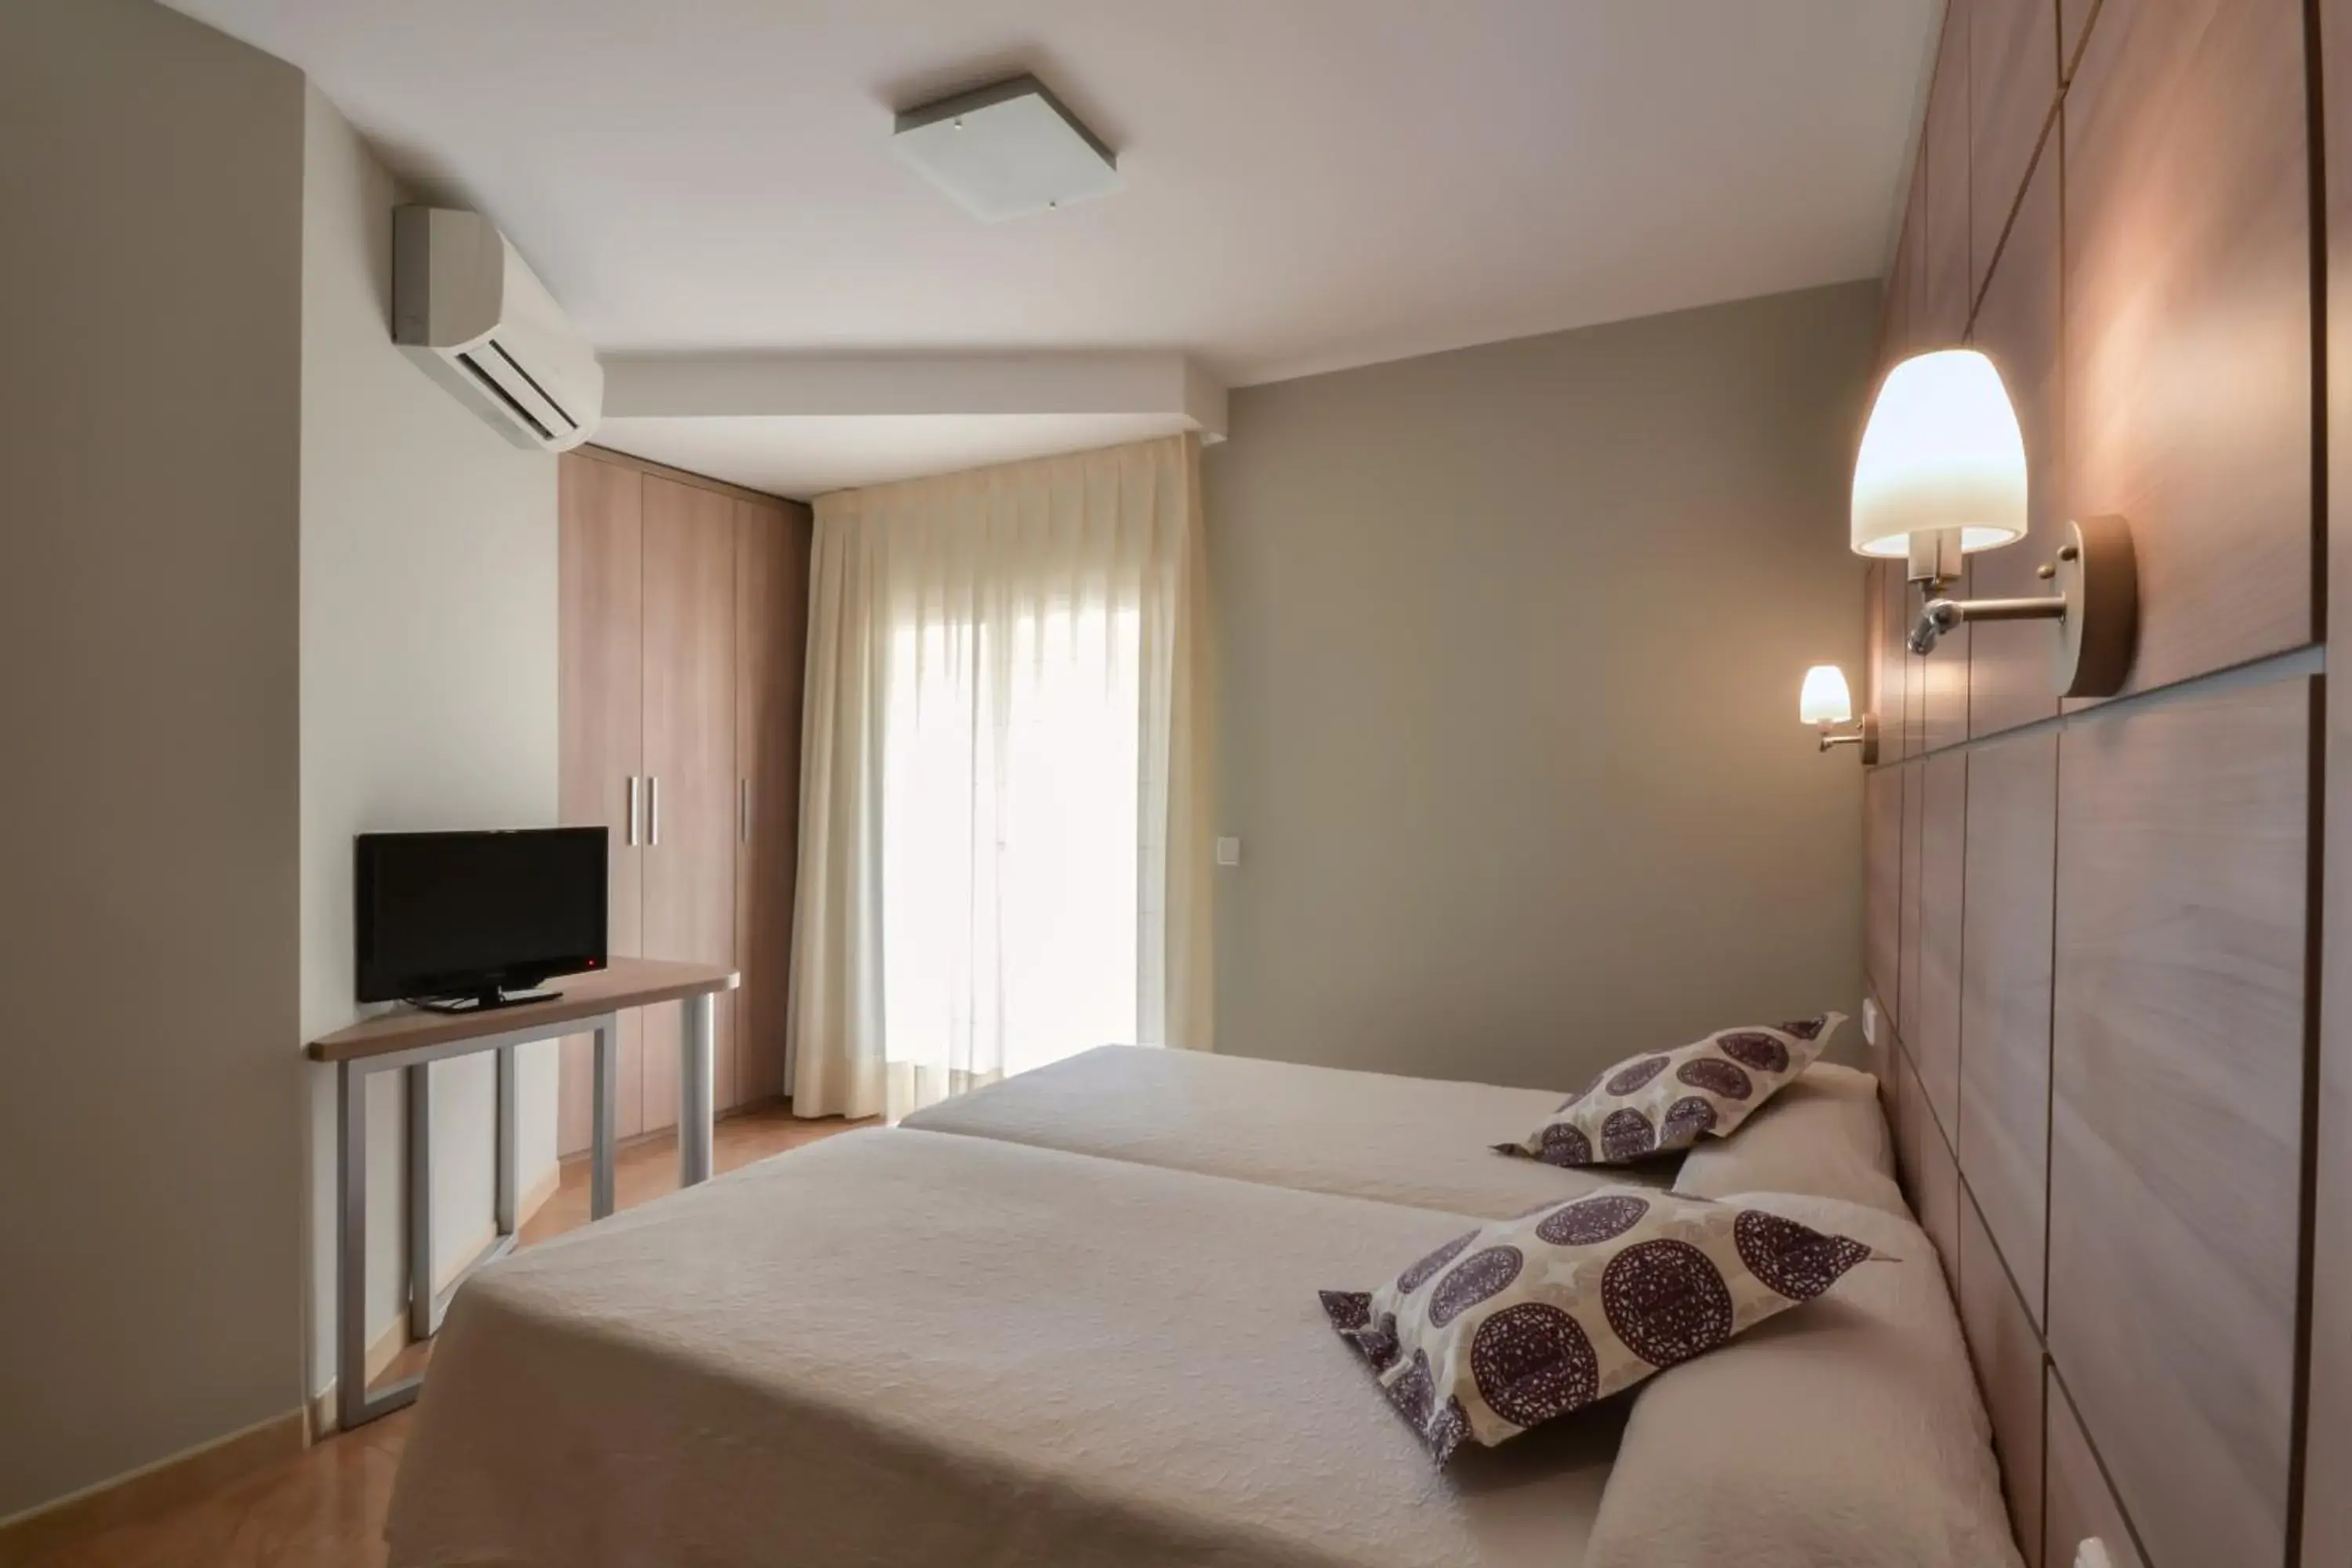 Bed, Room Photo in El Cami Hotel